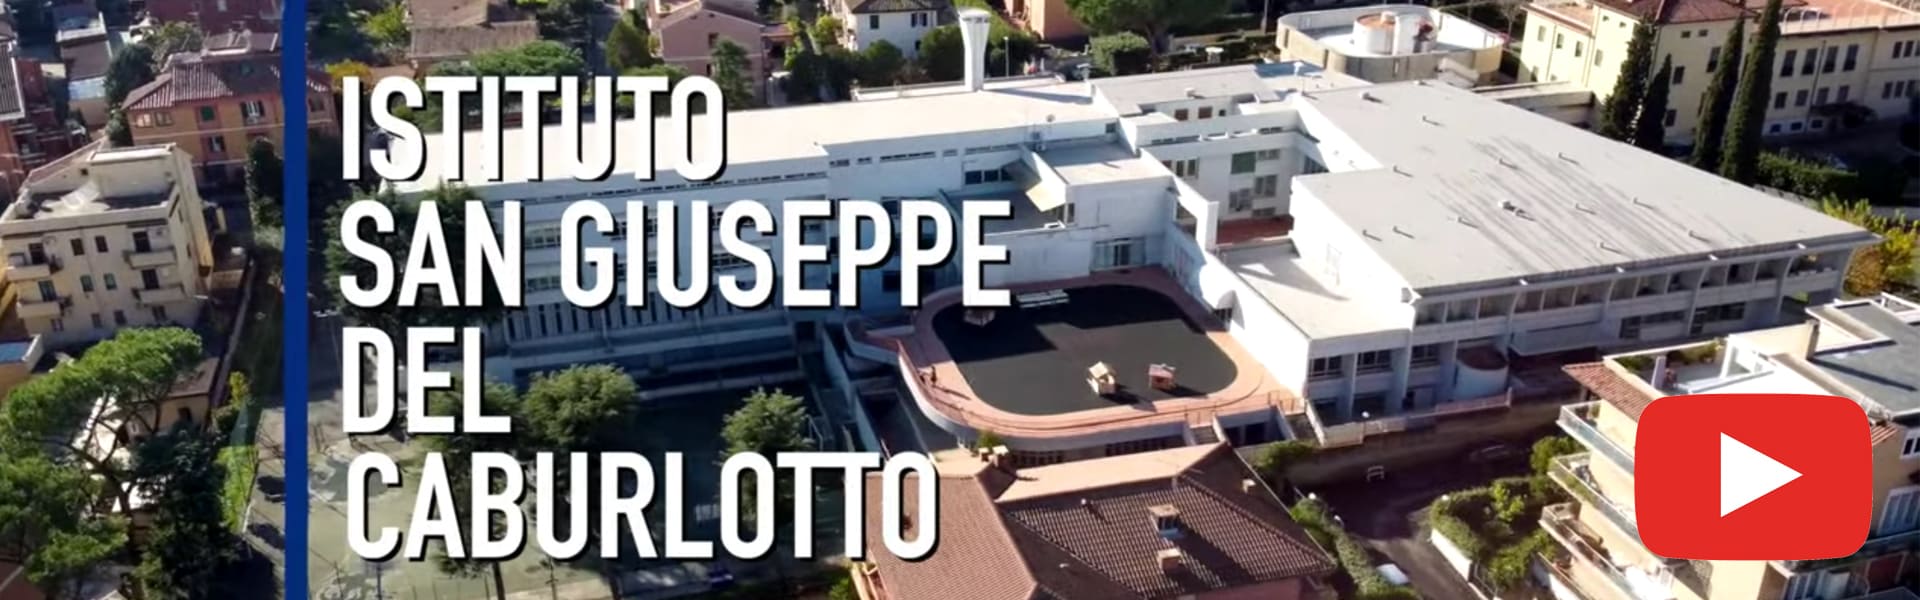 Istituto San Giuseppe del Caburlotto Video - Slide 3 (1)